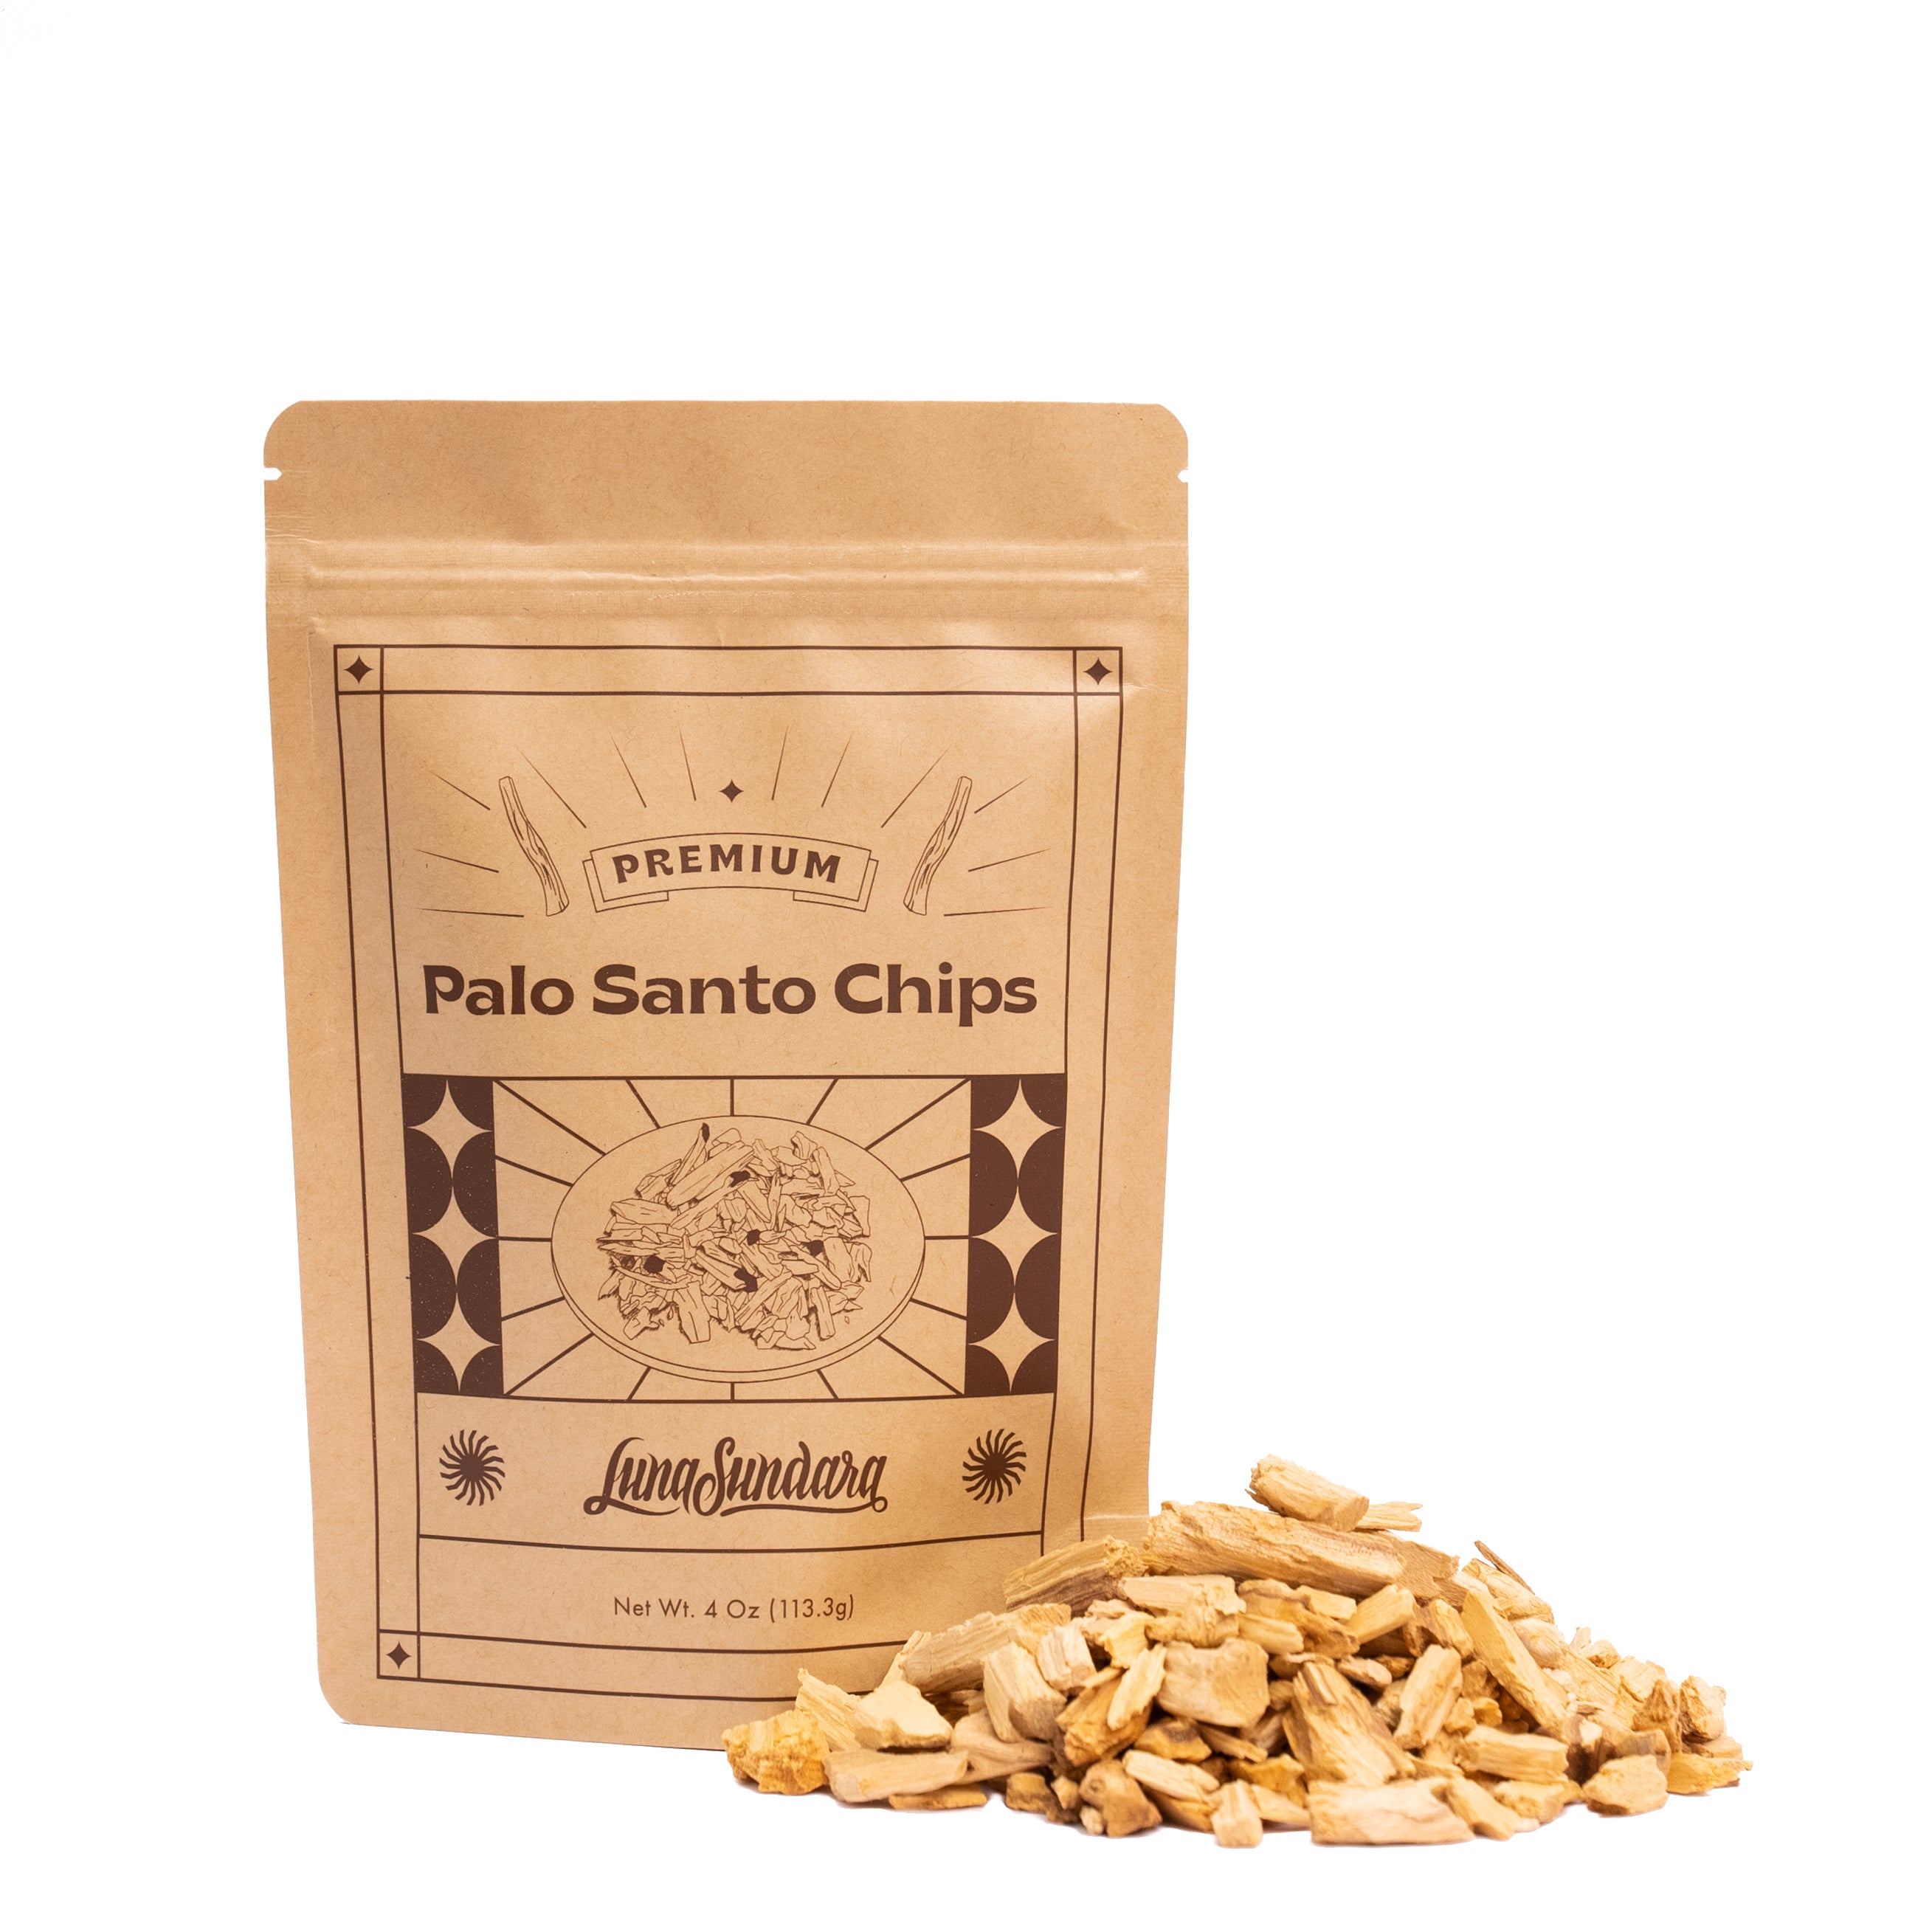 Palo Santo chips